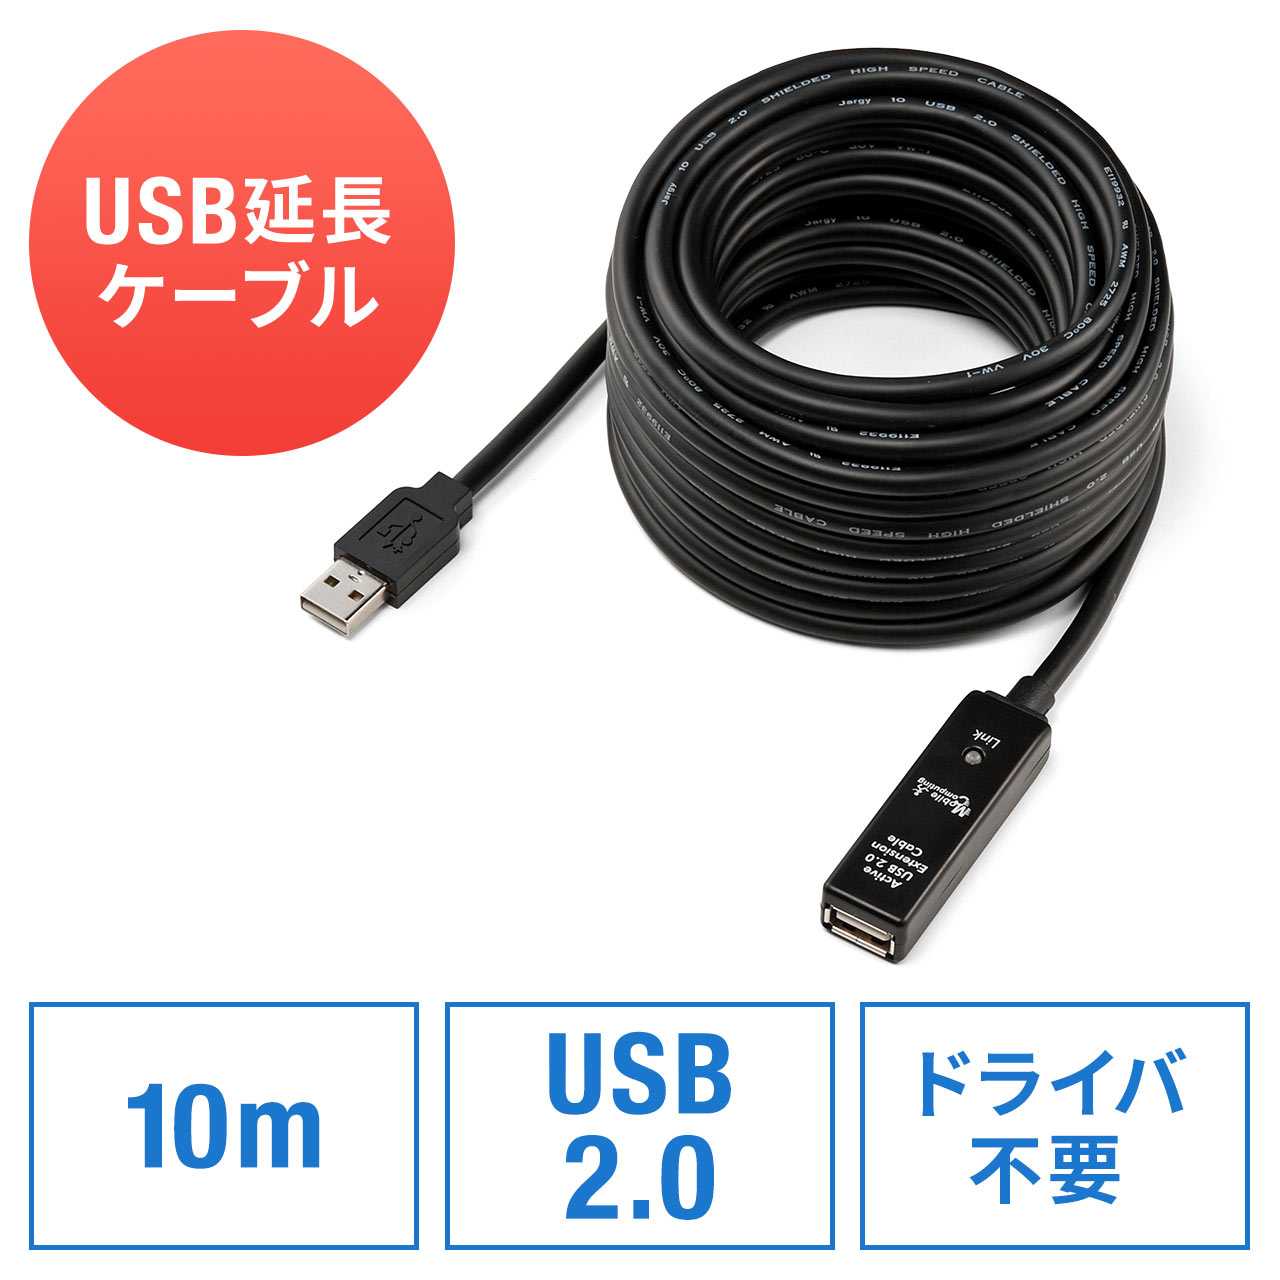 ハイパーツールズ USB2.0アクティブロングケーブル(Aオス・Bオス) 10m CBL-D203-10M